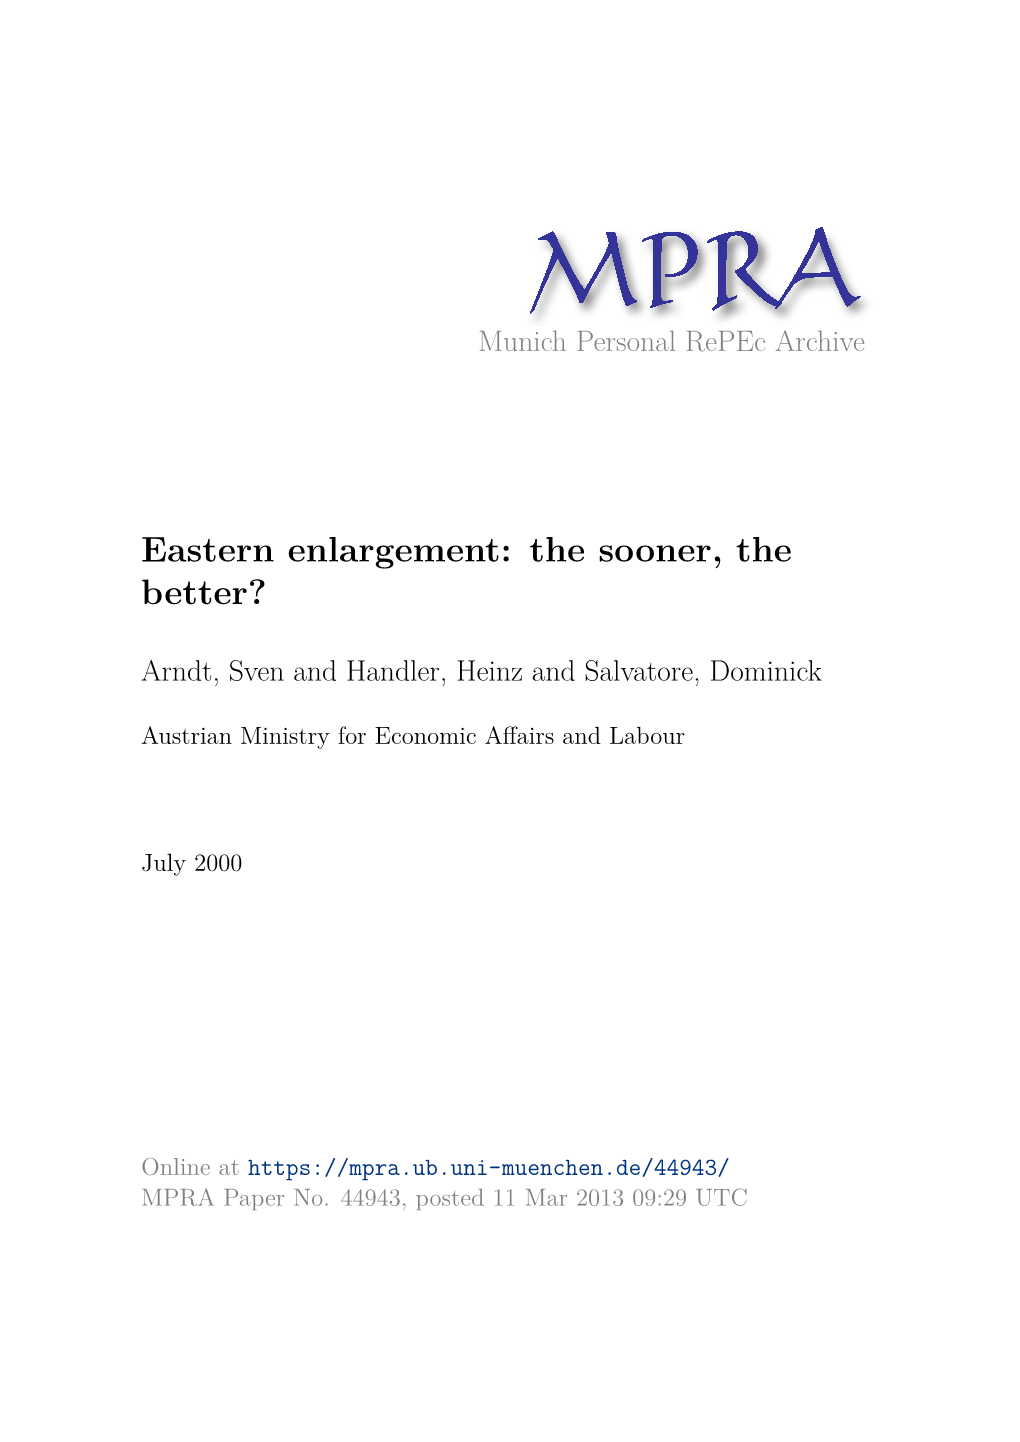 Eastern Enlargement: the Sooner, the Better?